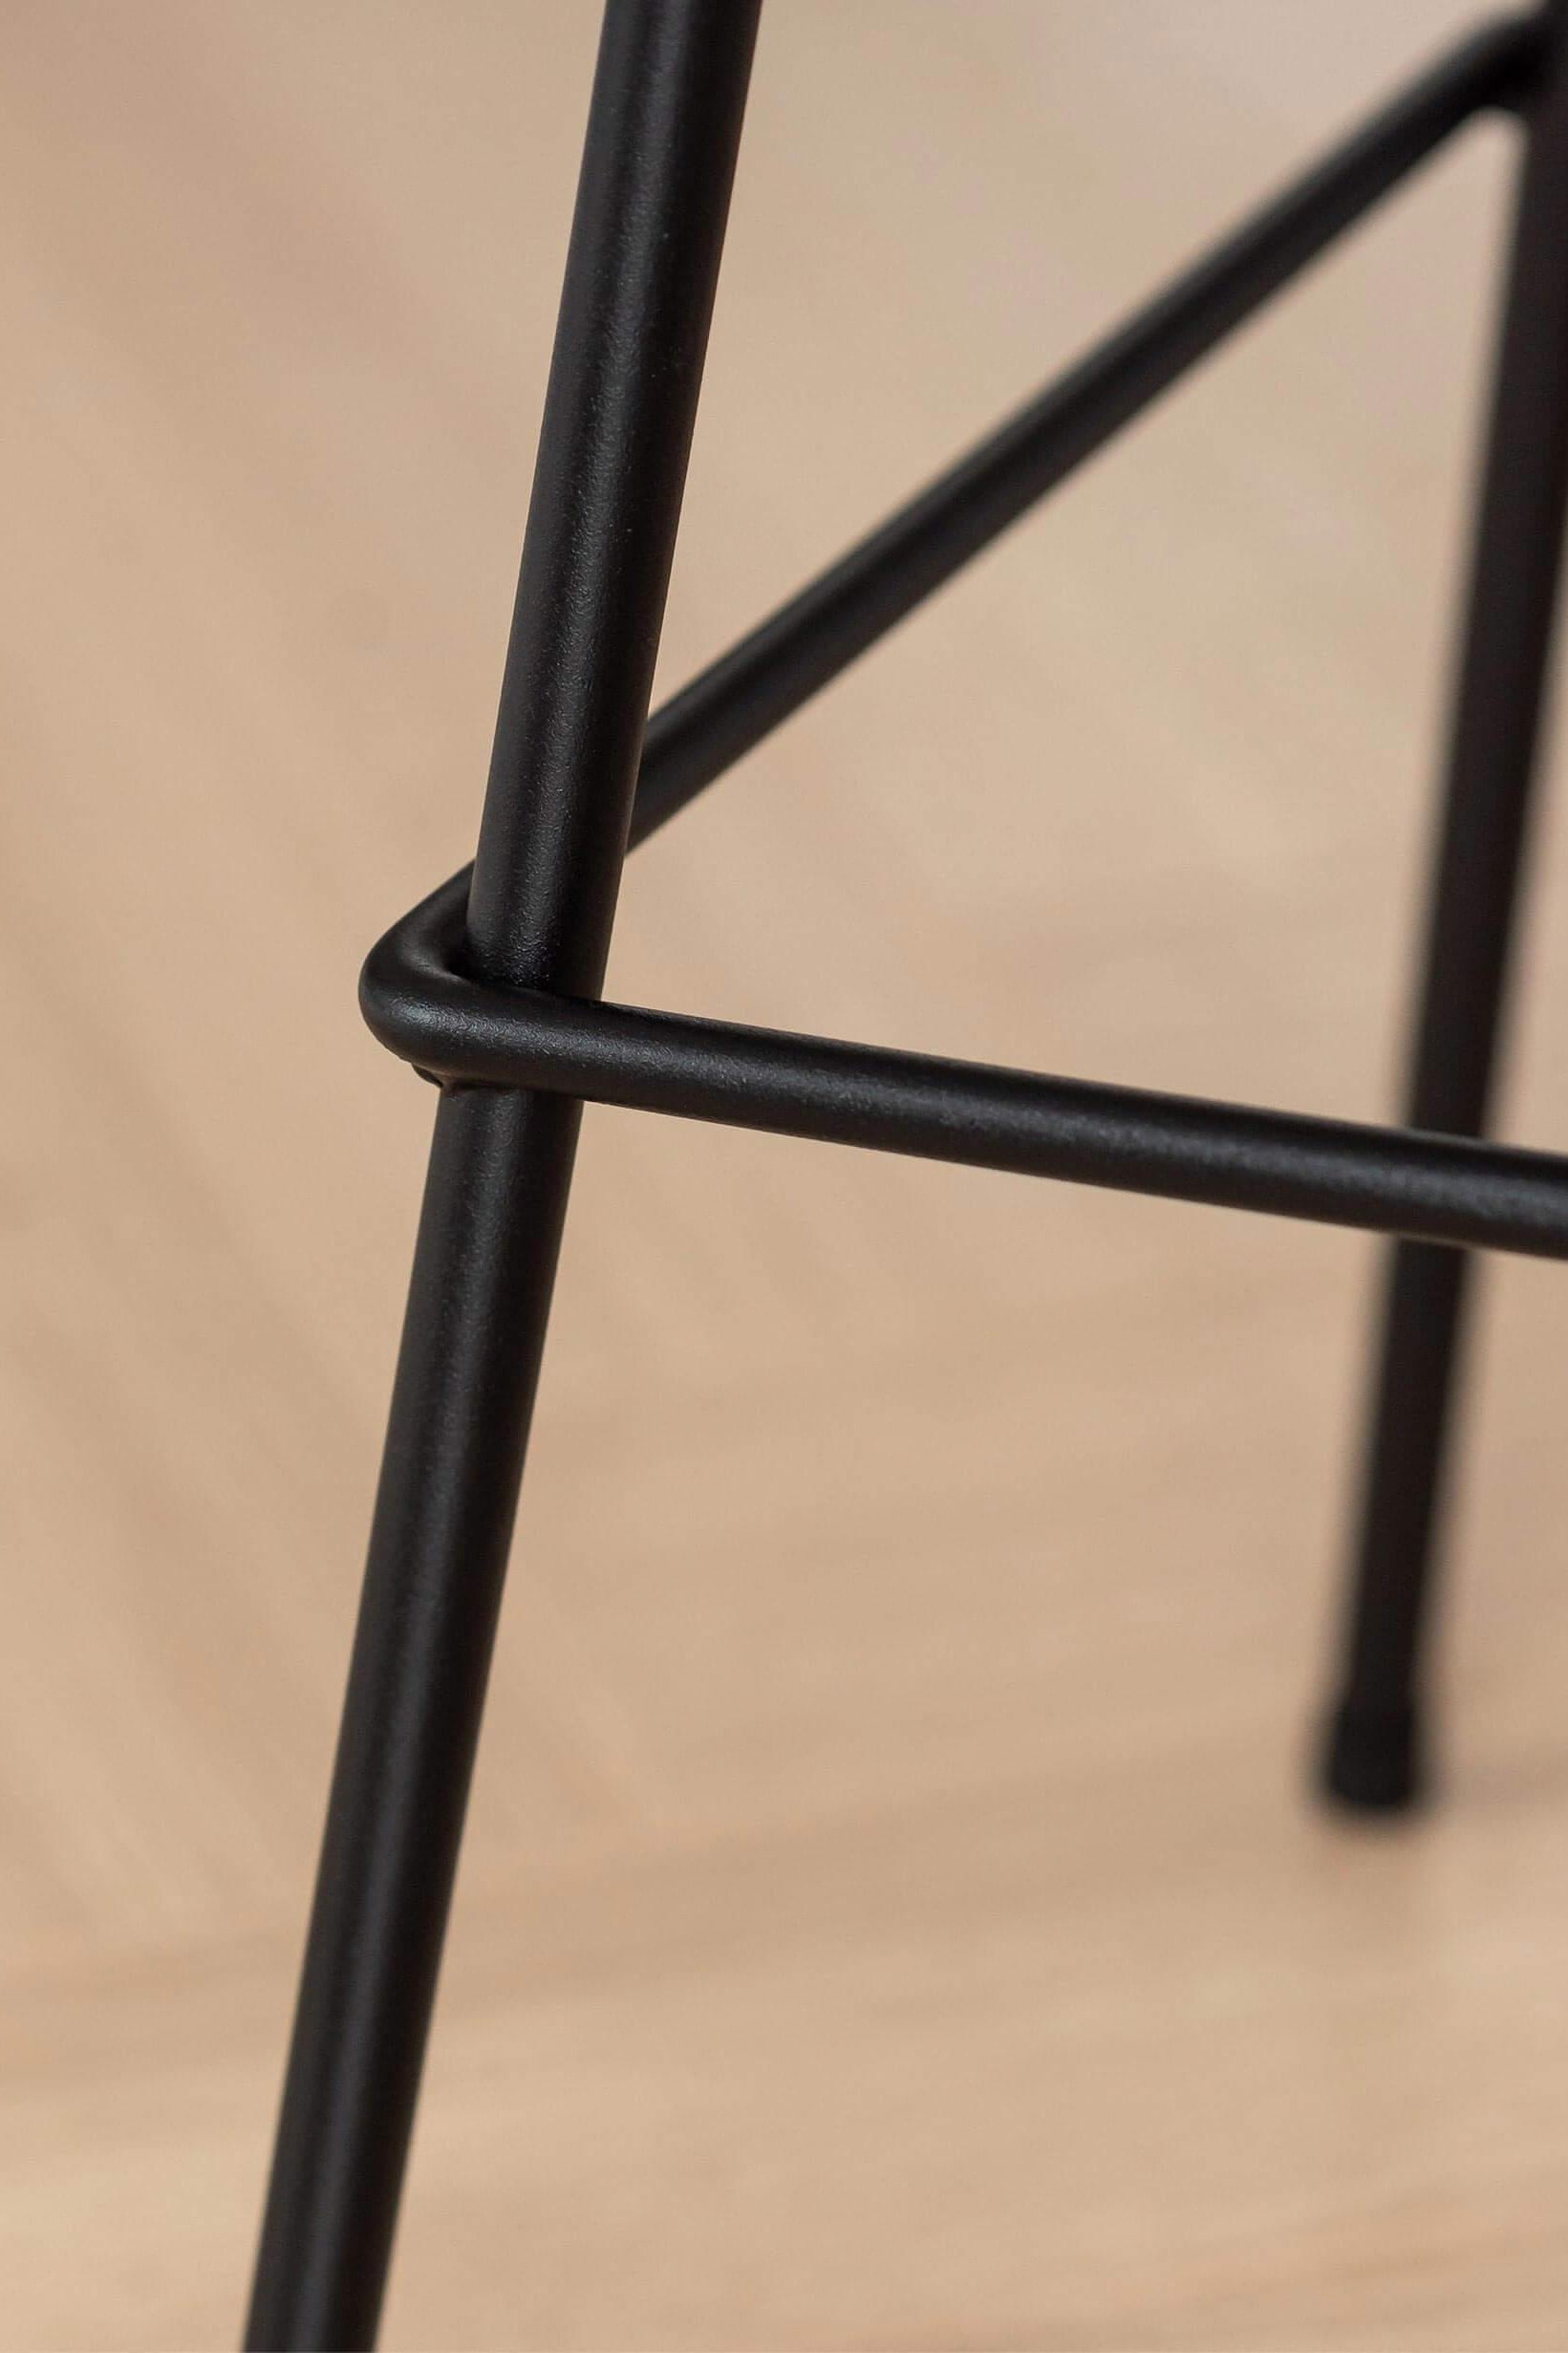 Barhocker aus schwarzem Metall mit einer Sitzfläche aus Massiv-holz | Metallbude